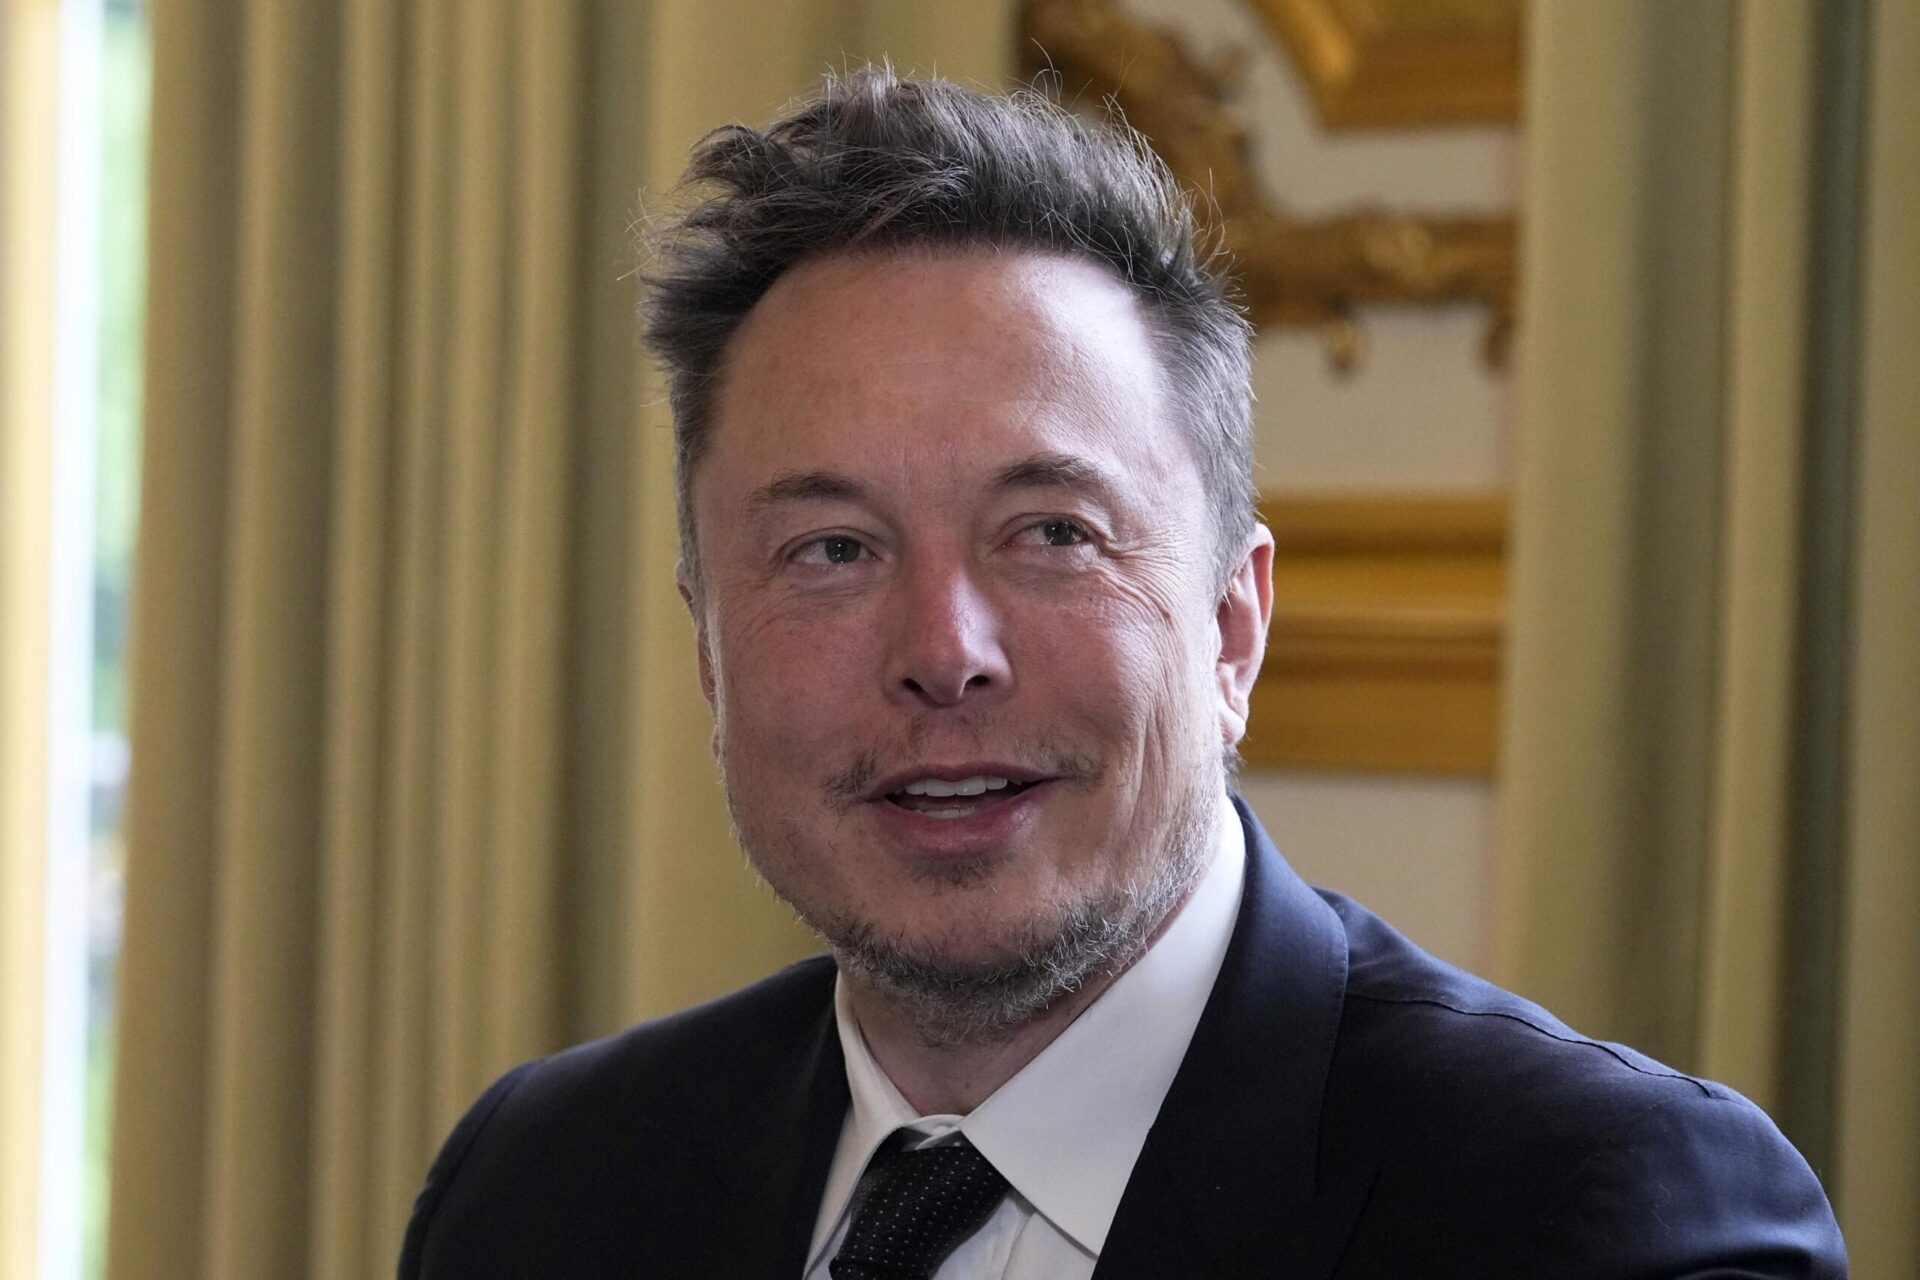 Elon Musk quiere construir una plaza de ciudad digital.  Pero su debut con DeSantis tuvo un fallo tecnológico.